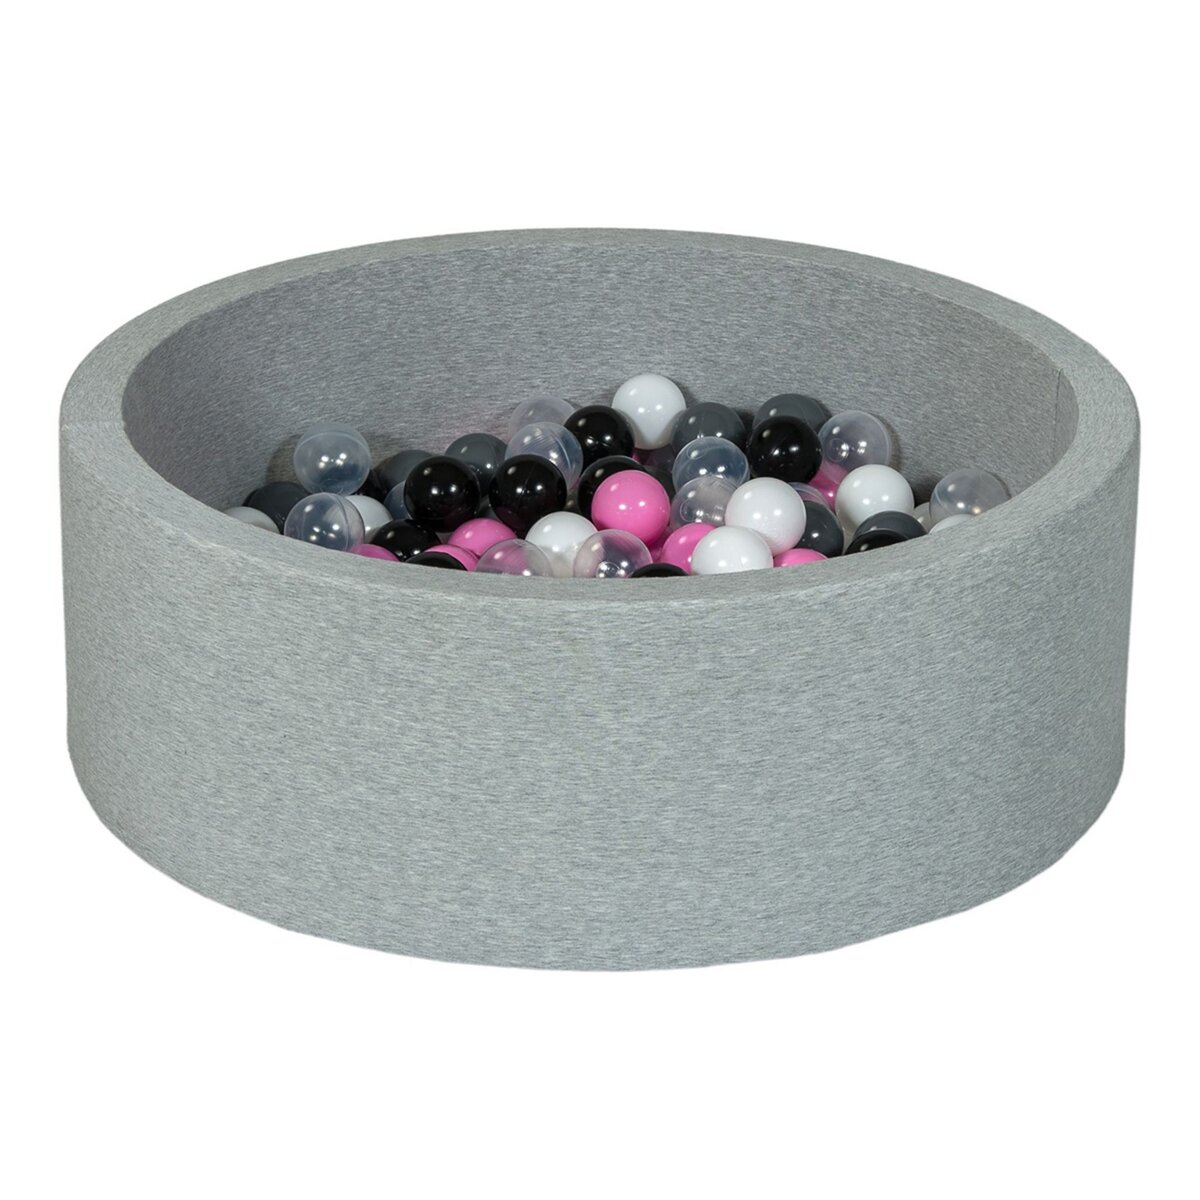  Piscine à balles Aire de jeu + 200 balles noir, blanc, transparent, rose clair, gris